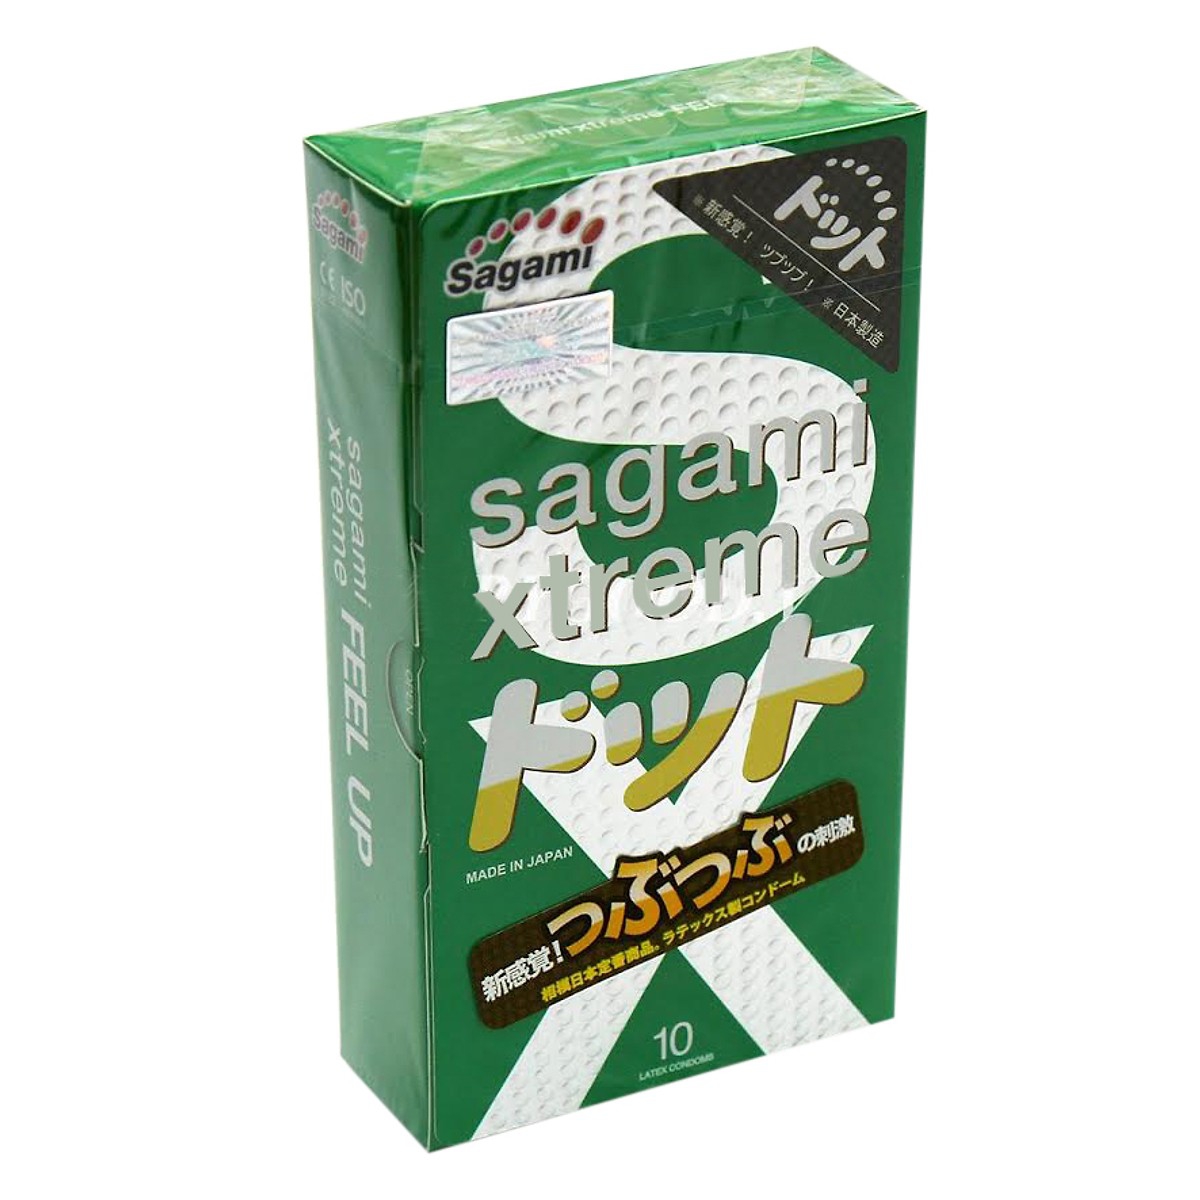 Bao Cao Su Sagami Xtreme Green - Hộp 10 Cái